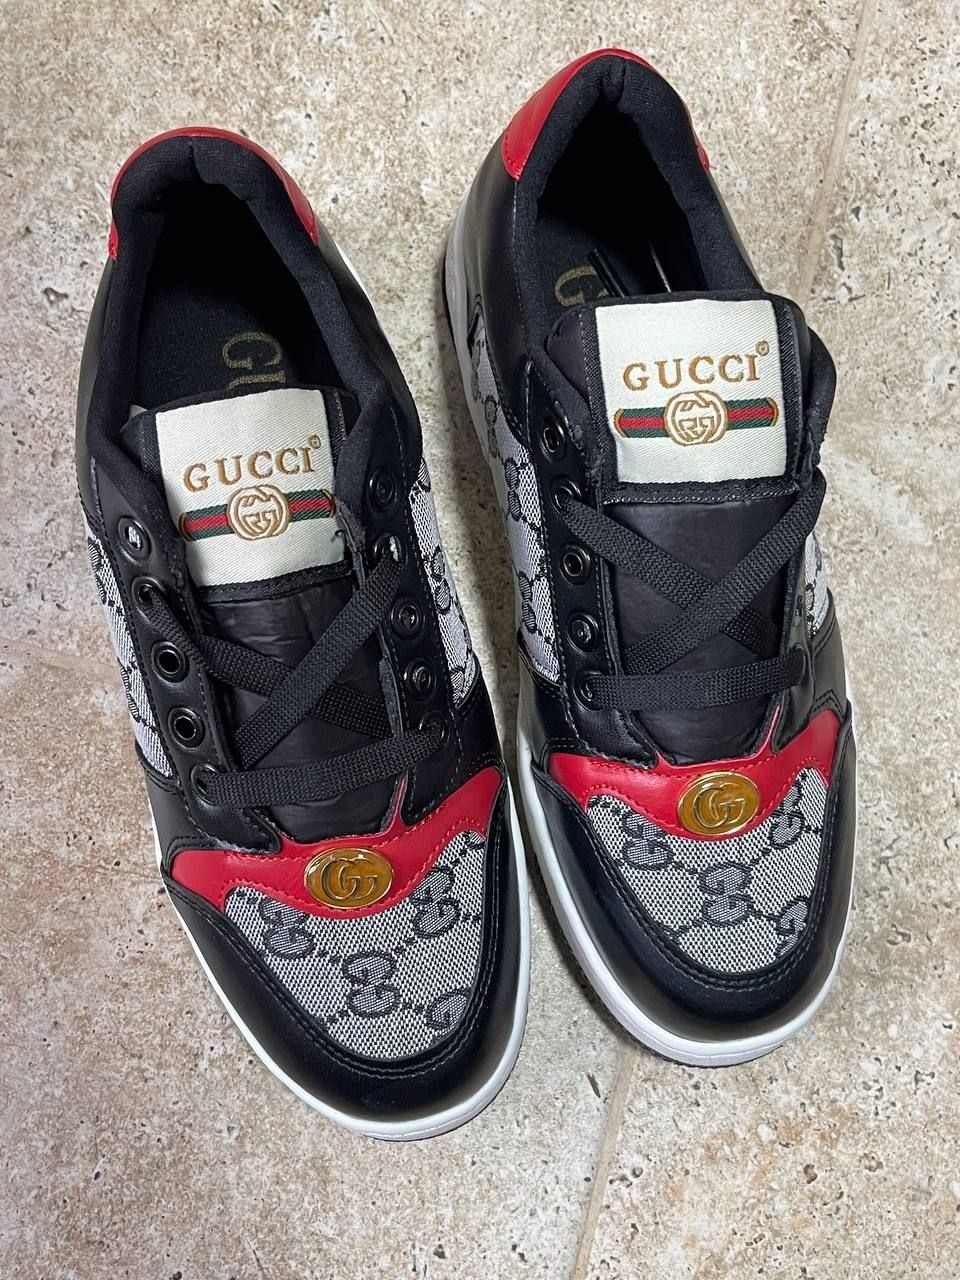 Adidas Gucci de copii